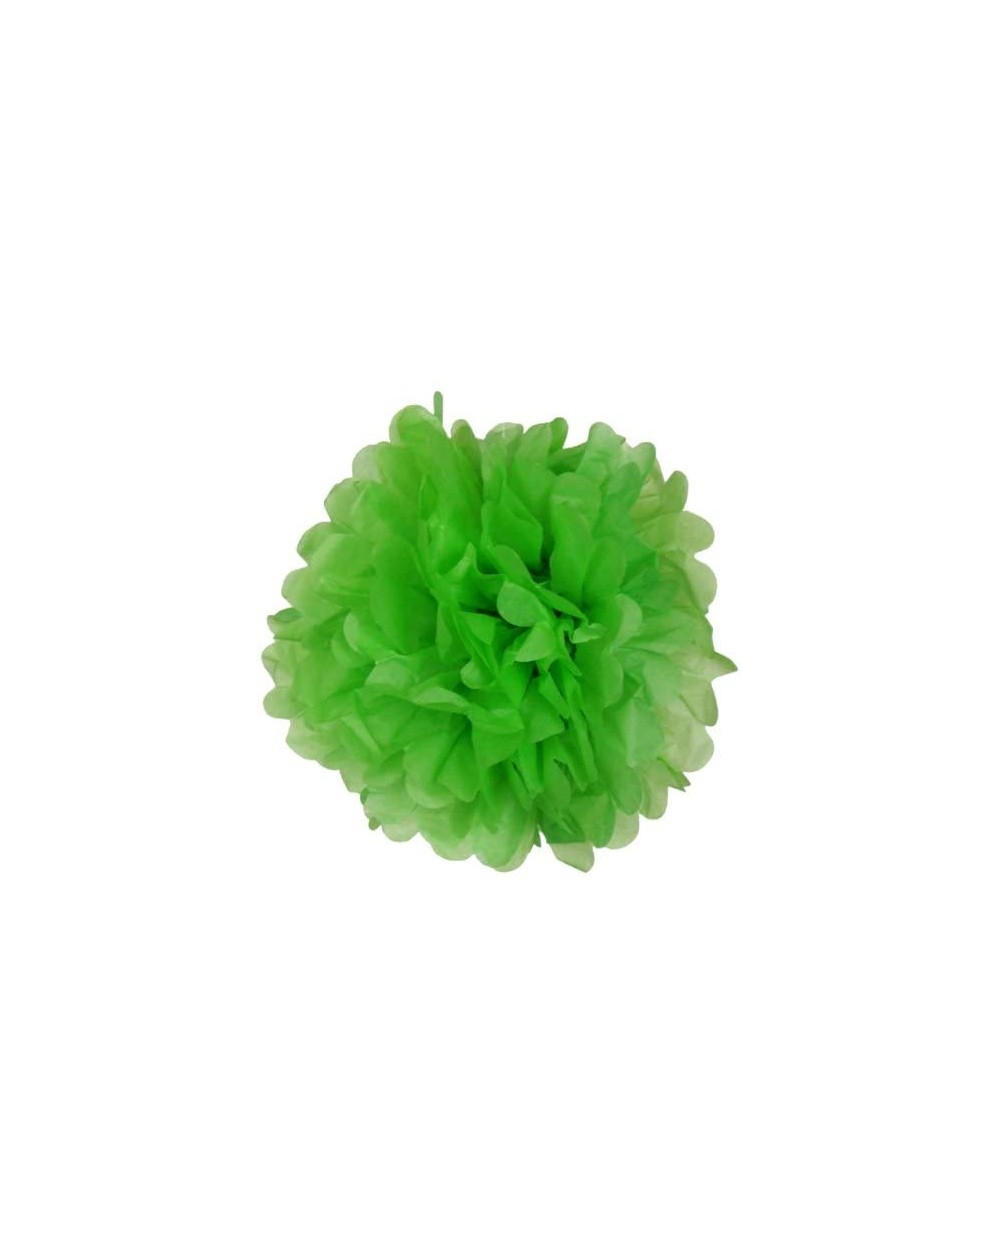 Tissue Pom Poms Tissue Pom Pom Paper Flower Ball 8inch Green Apple - Green Apple - CR11H6OER2R $10.95